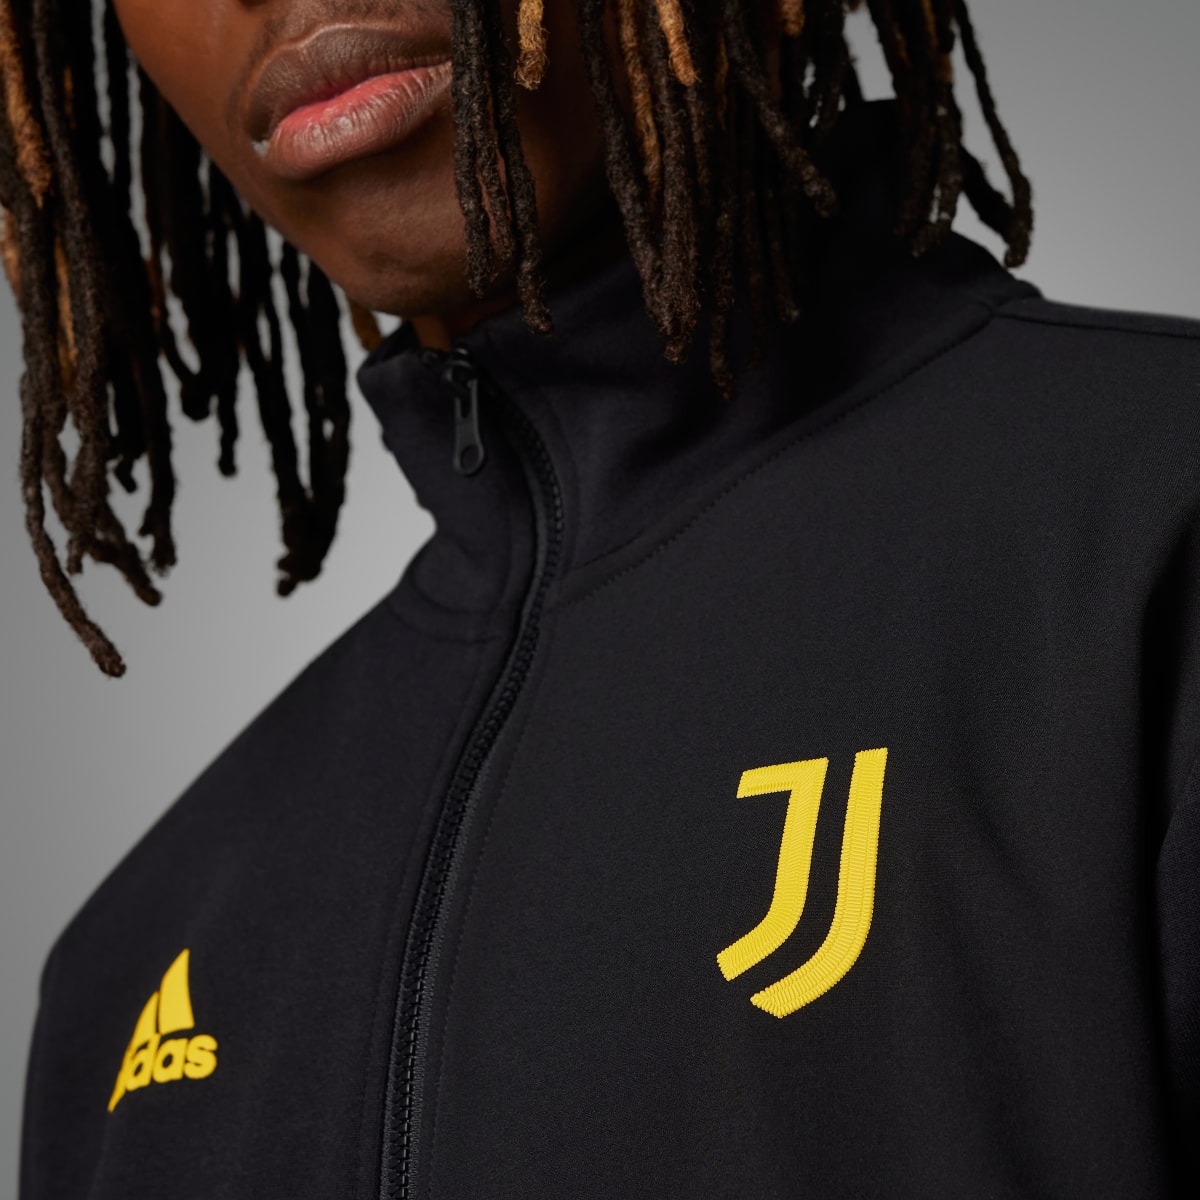 Adidas Juventus Anthem Jacket. 7